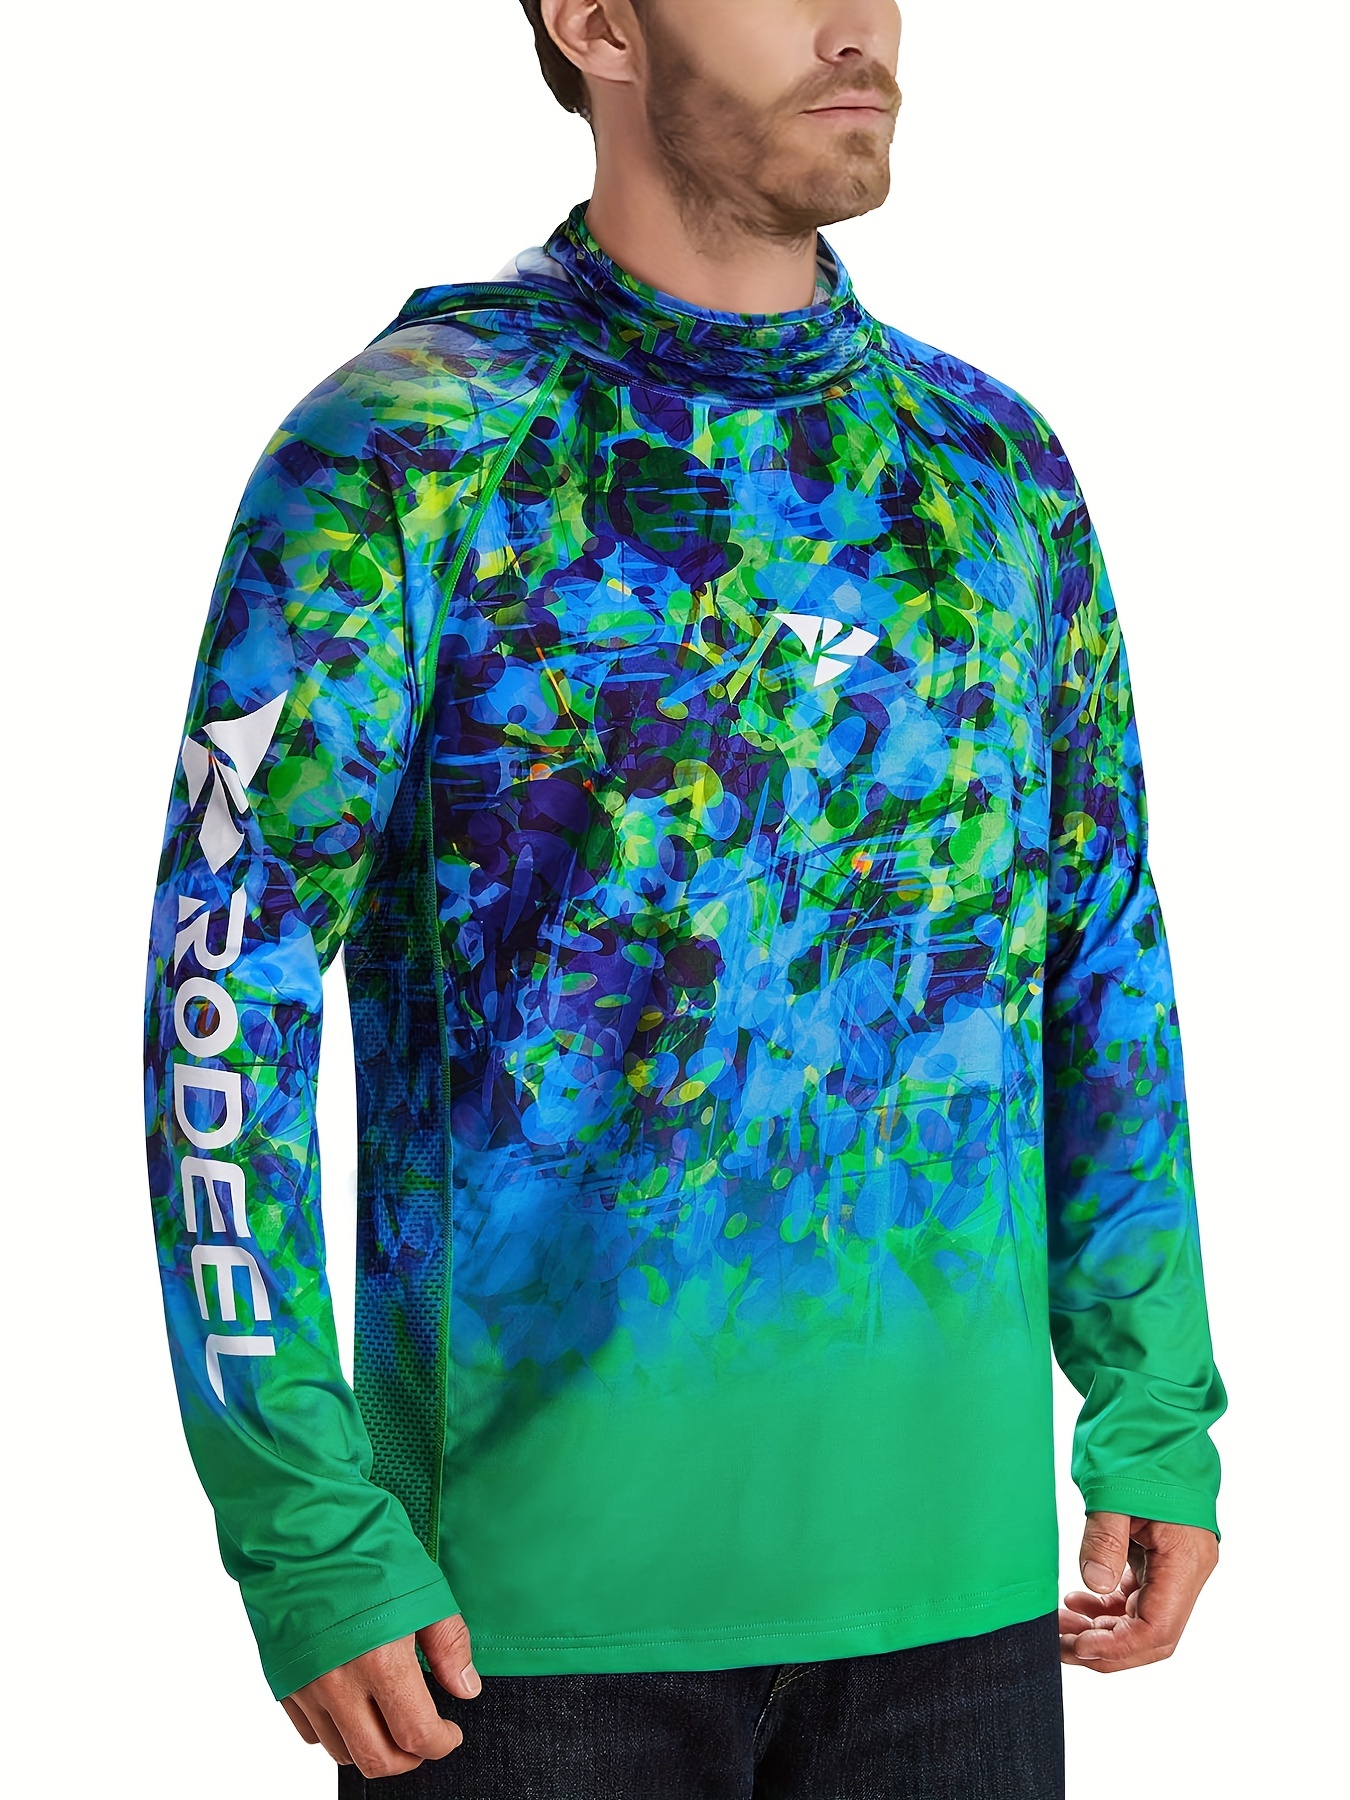 Reel Life Fishing Hoodie Swim Shirt Mens Quick Dry Wicking UPF 50+ NWT XXL  2XL